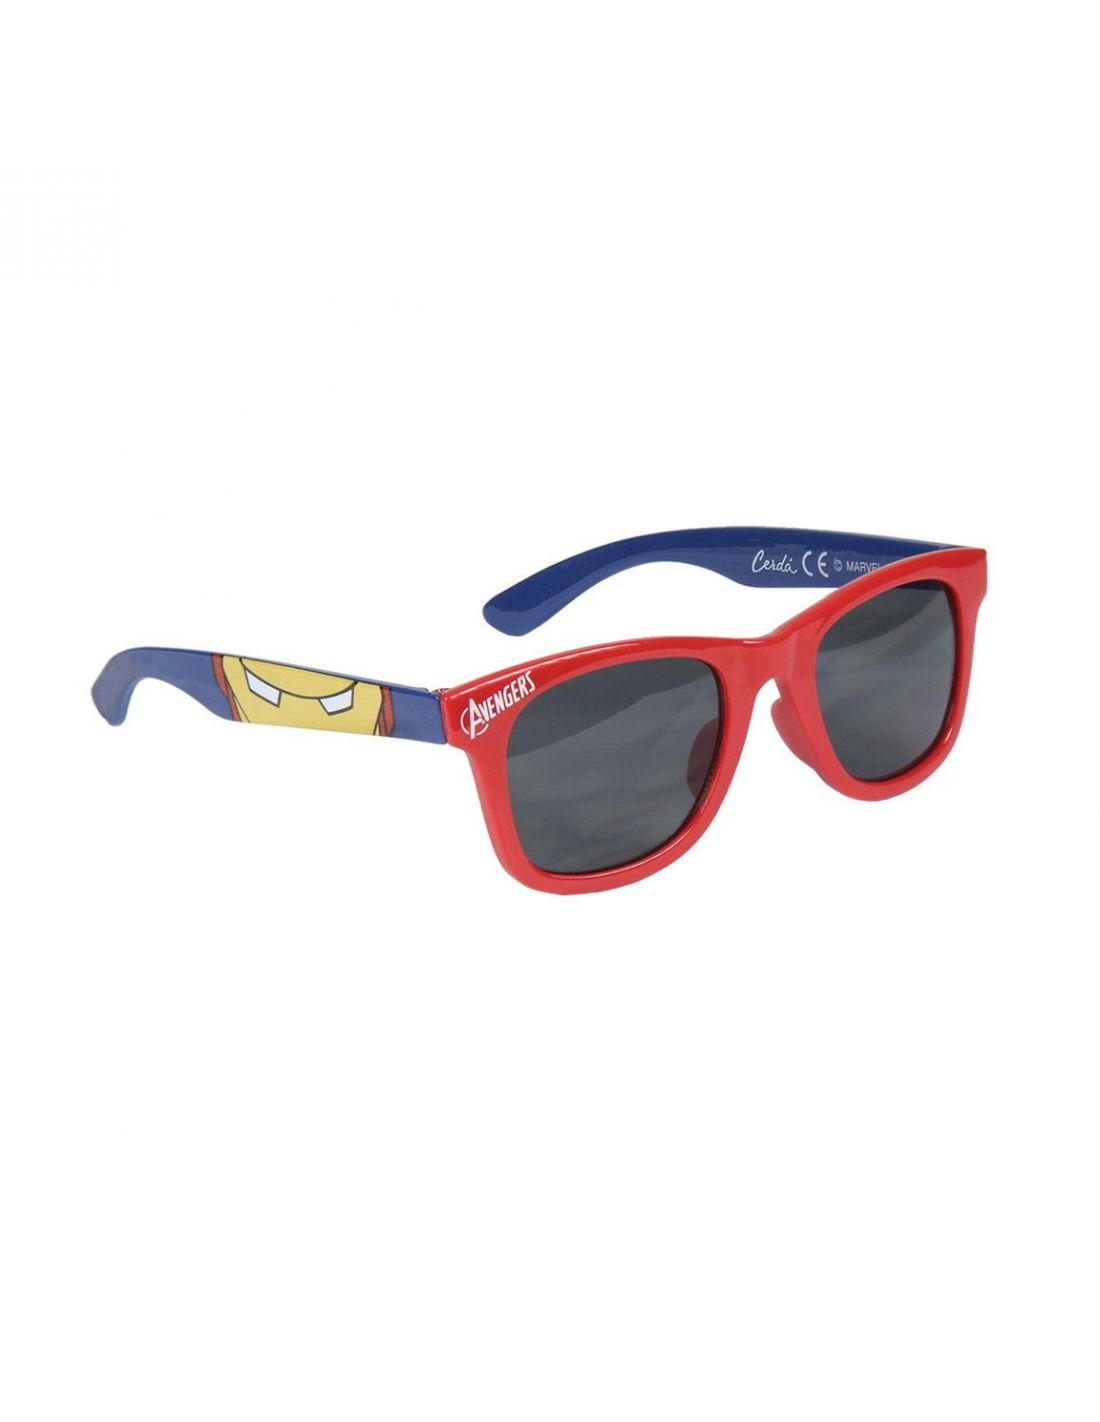 unisex Babymotion Gafas de sol infantiles de Avengers a partir de 3 años de Marvel para niños y niñas gafas de sol todoterreno talla única tintadas 100% UV400 